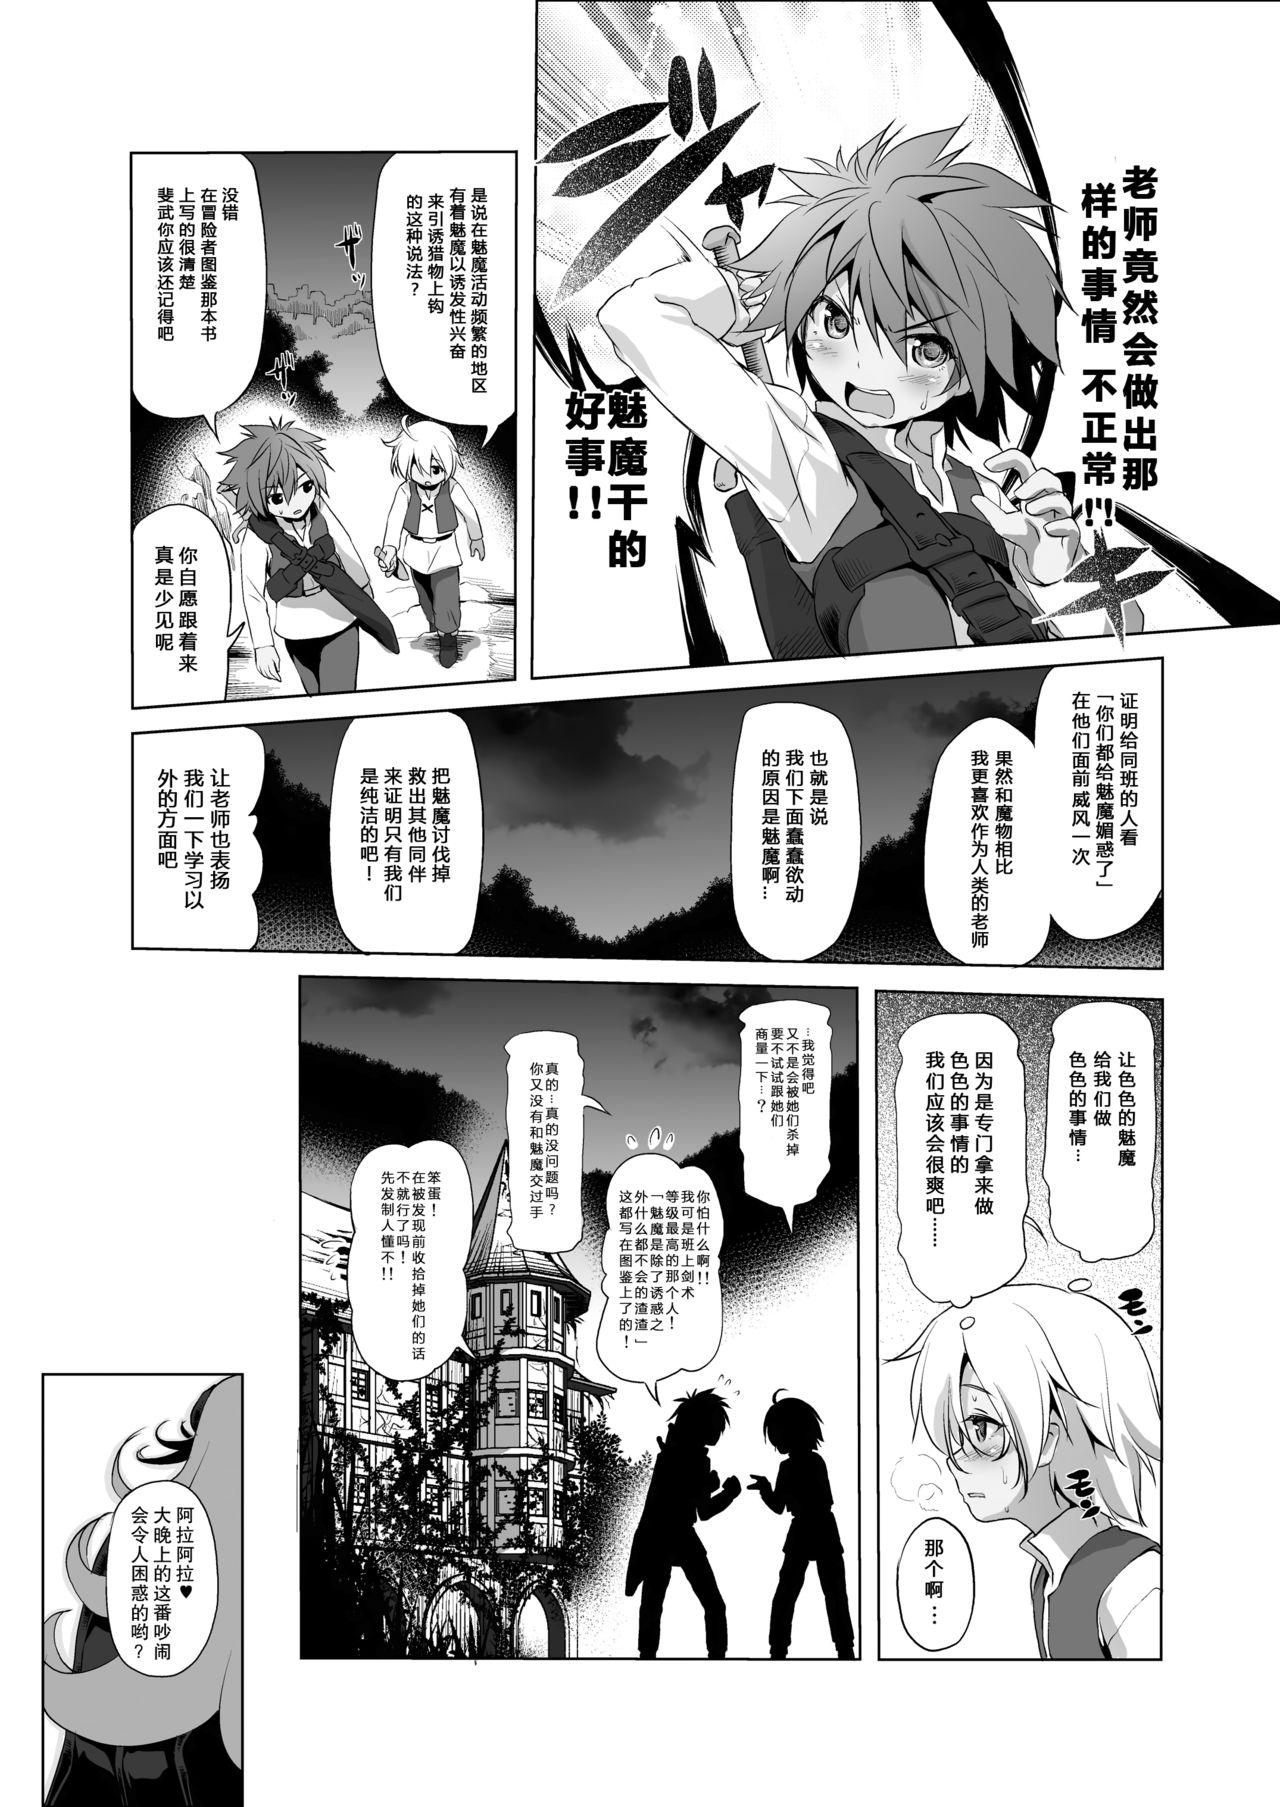 Emo Gay Makotoni Zannen desu ga Bouken no Sho 3 wa Kiete Shimaimashita. - Original Money - Page 11